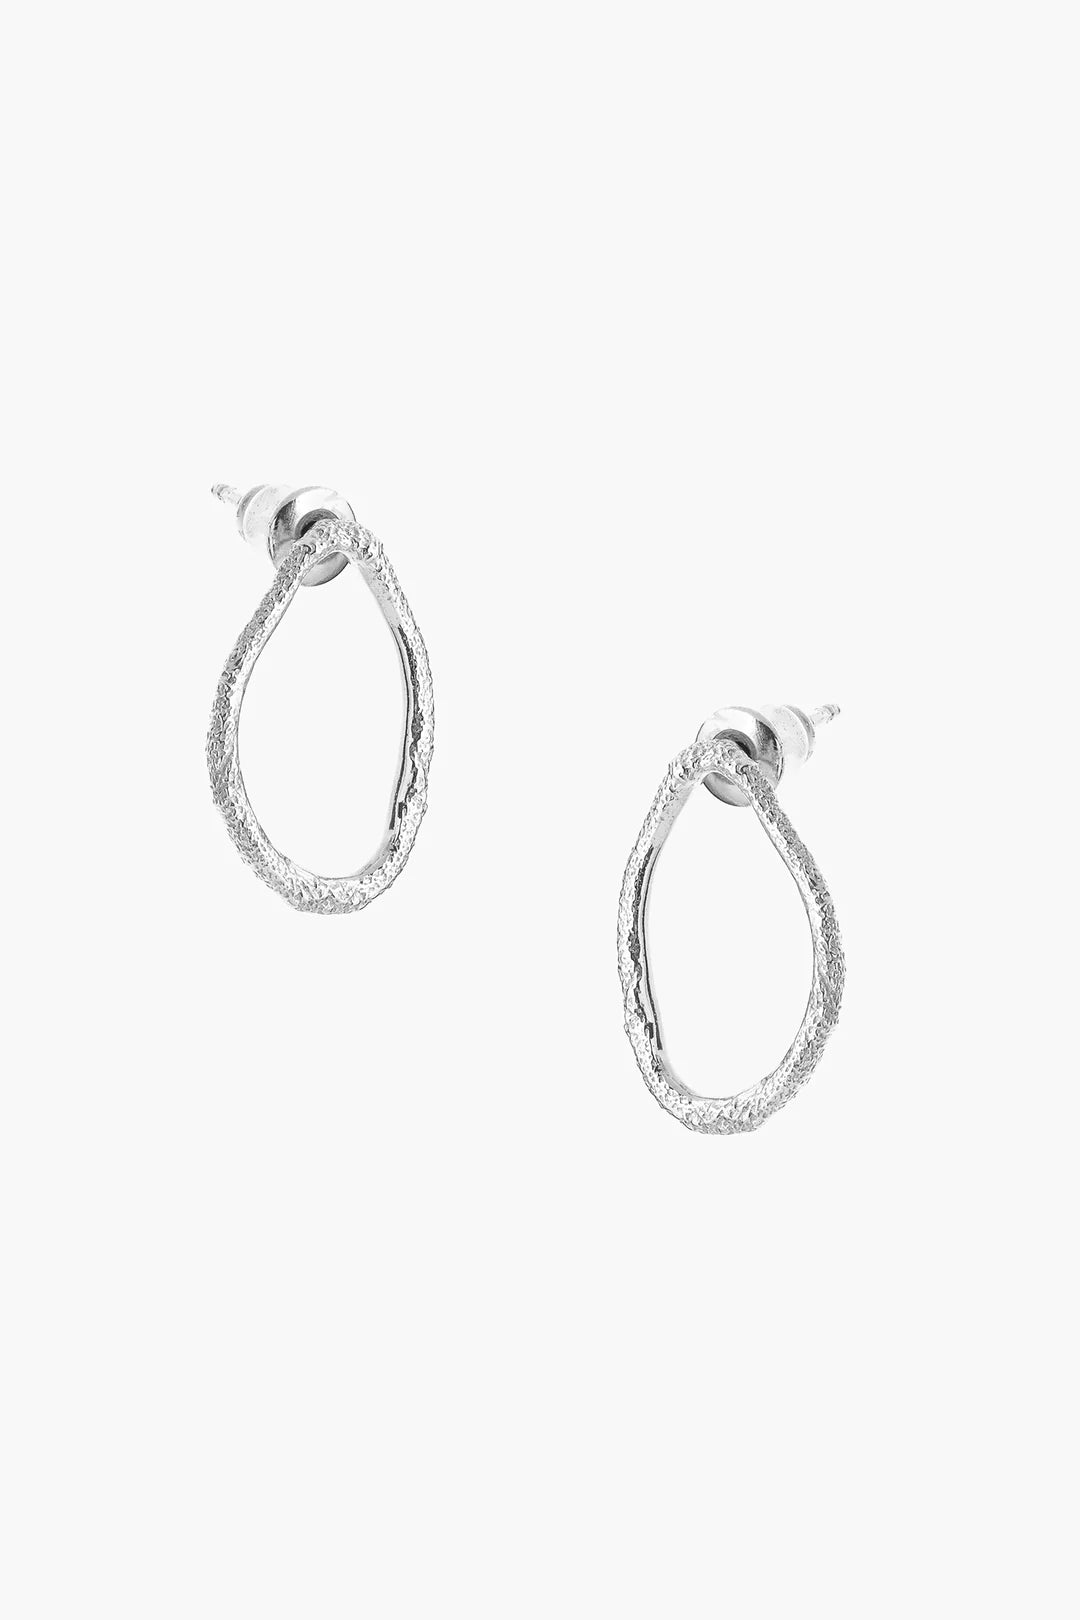 Tutti & Co Silver Seize Earrings